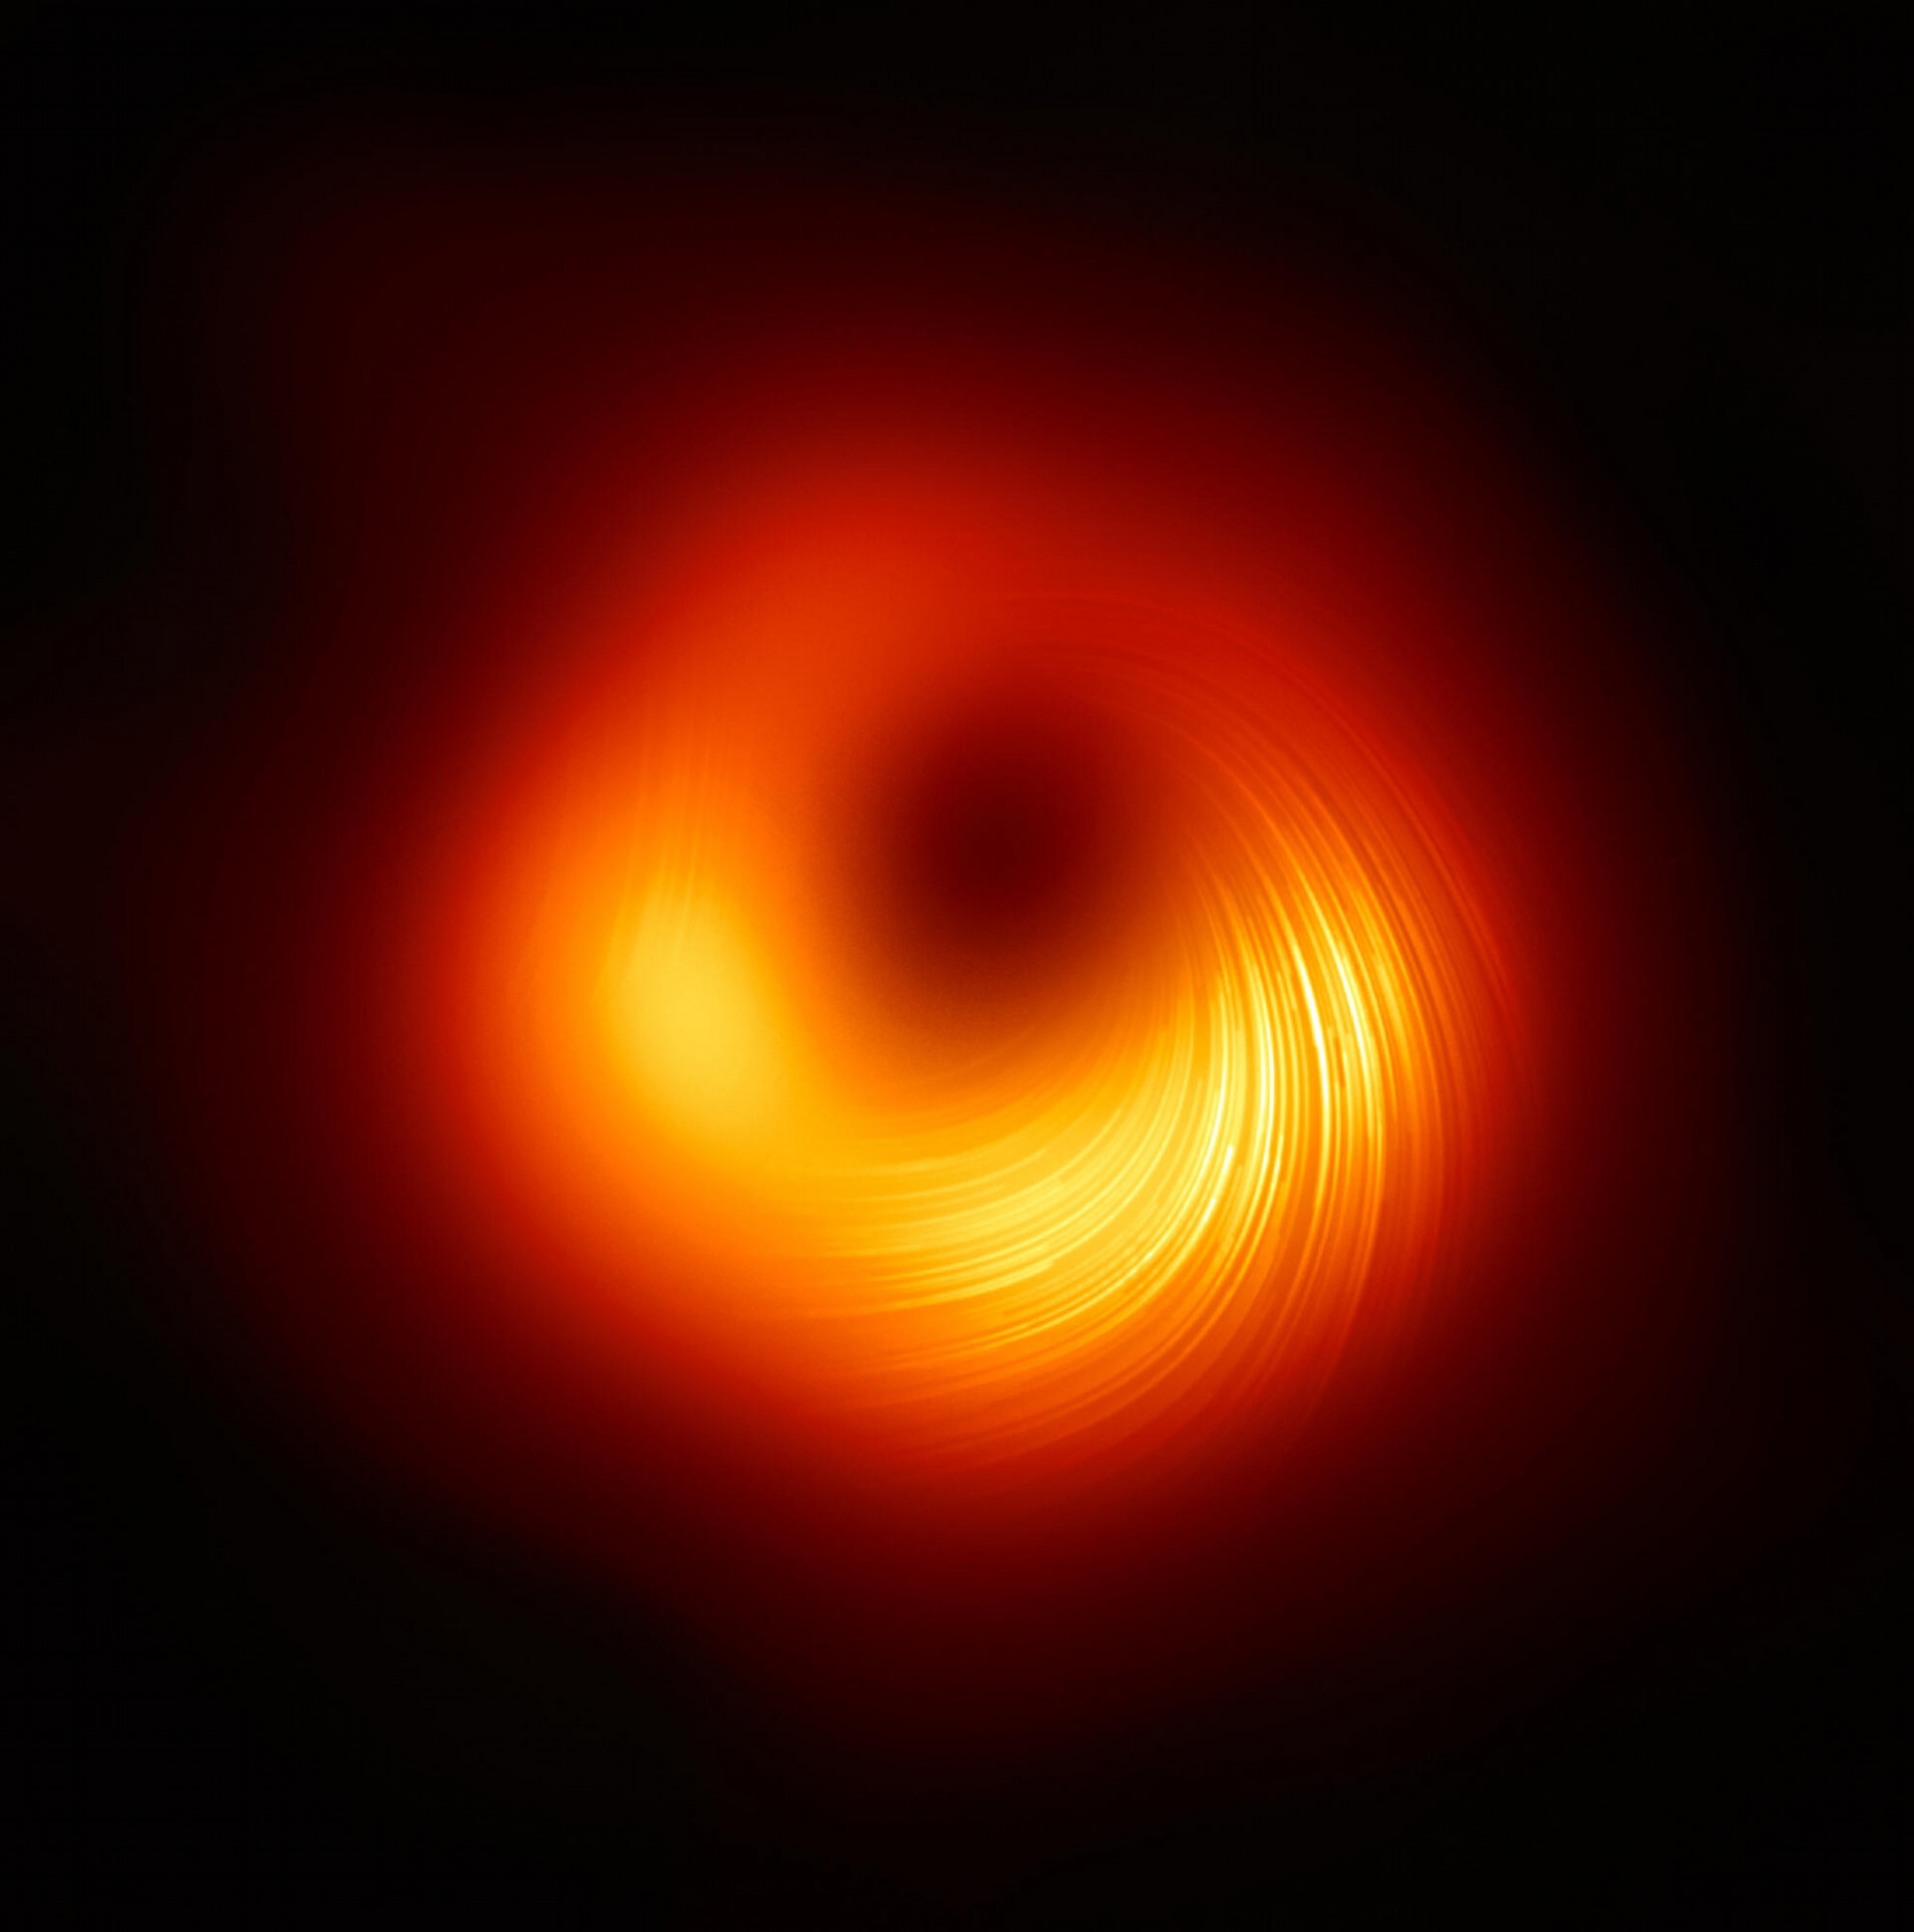 2021 年 3 月事件視界望遠鏡公布了 M87 星系中心黑洞的偏振光影像，圖中的條紋是光的偏振方向。 資料來源│EHT Collaboration 